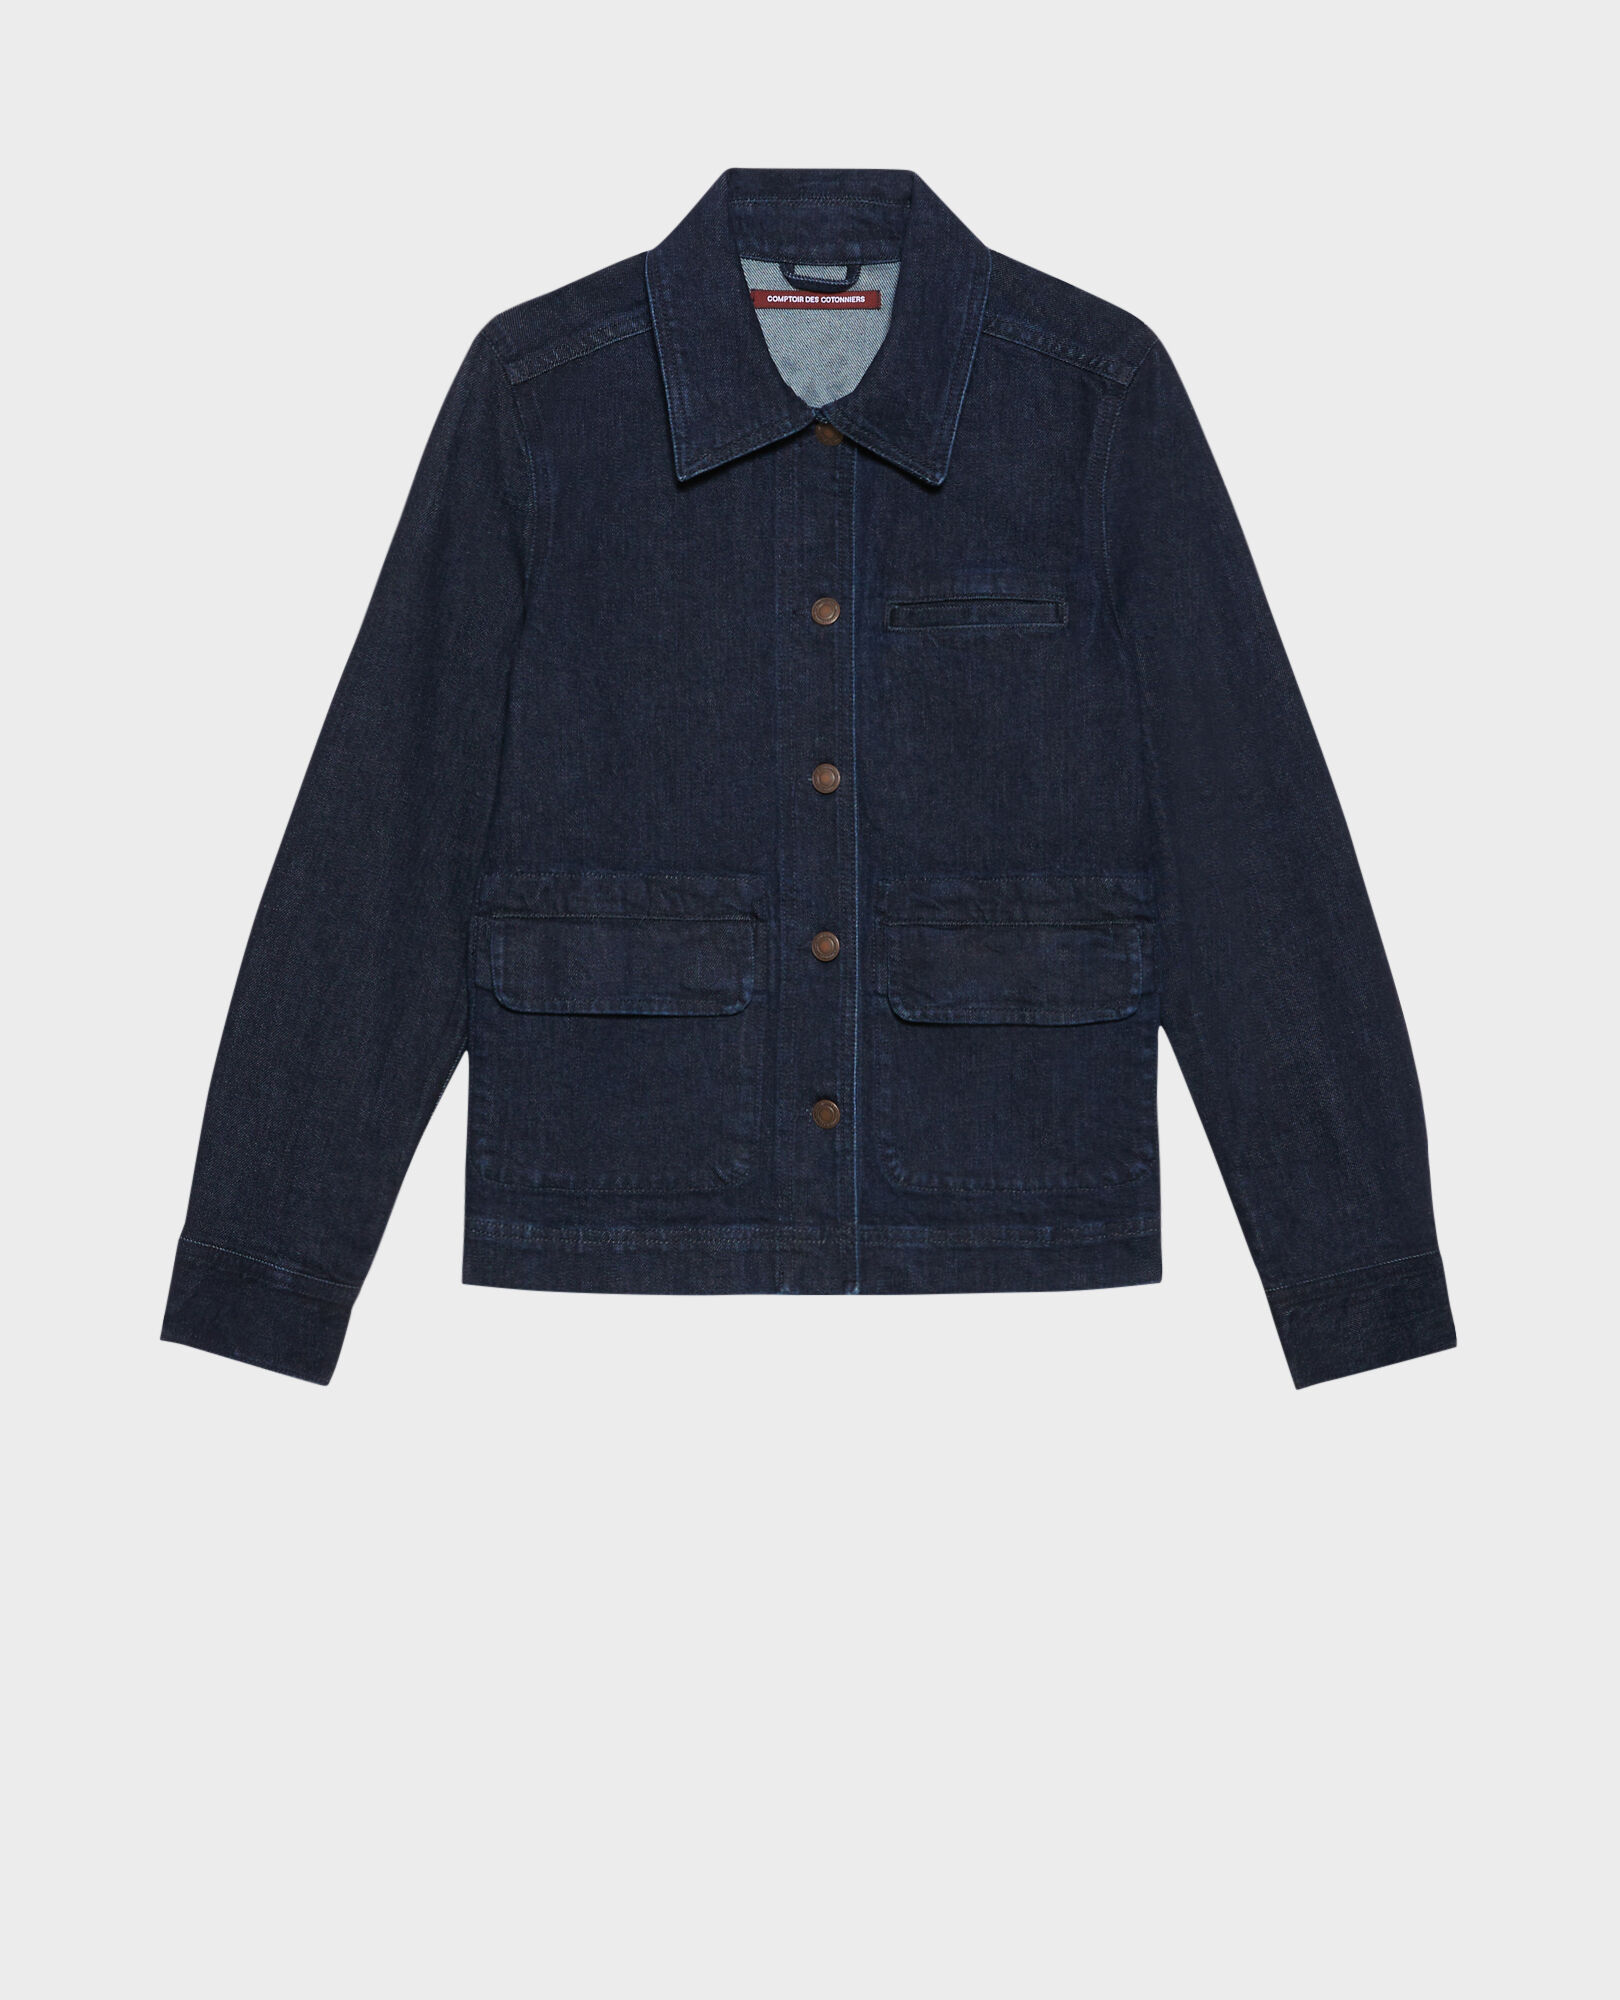 Cotton work jacket 103 denim 2sjd268c64